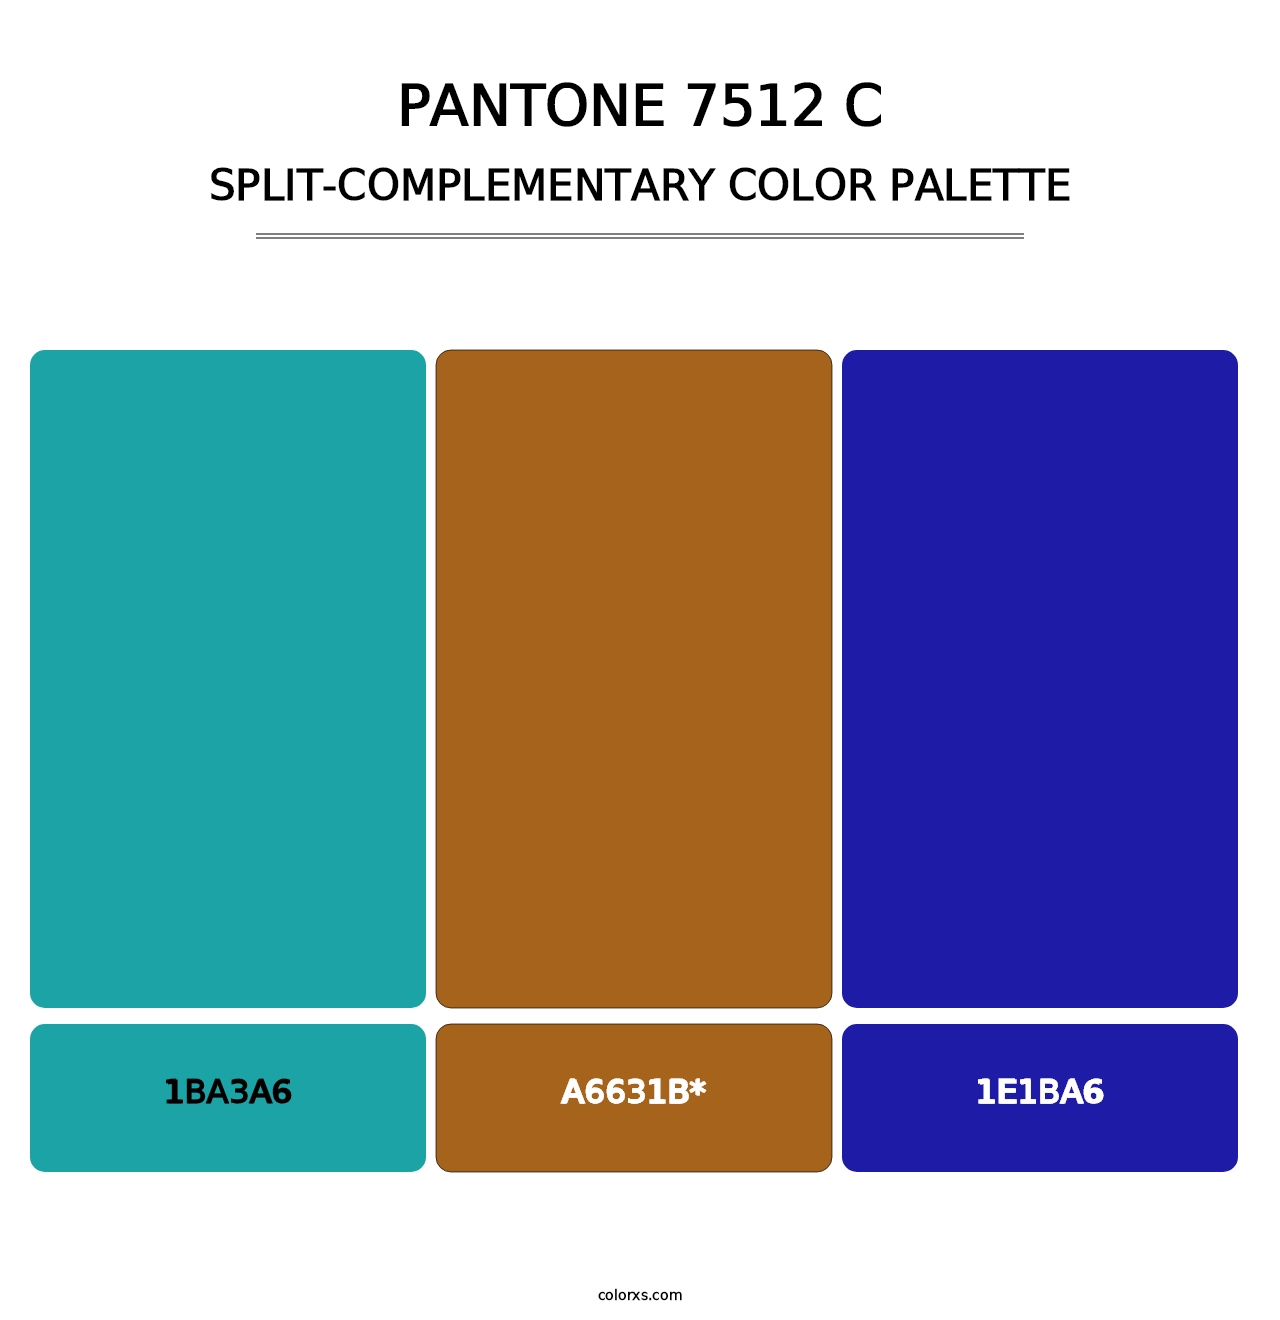 PANTONE 7512 C - Split-Complementary Color Palette